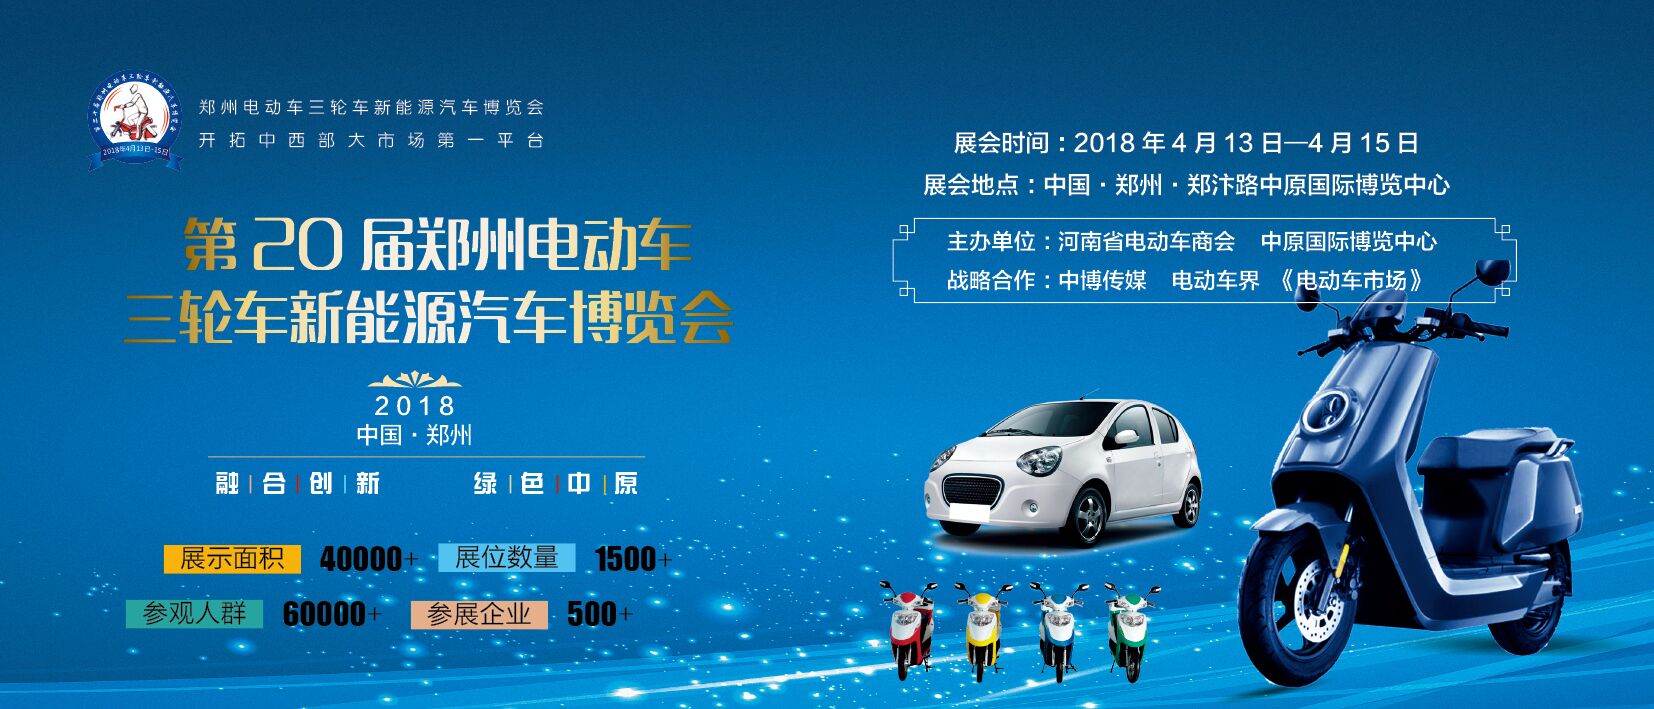 2018第20届郑州电动车电动三轮车电动汽车博览会